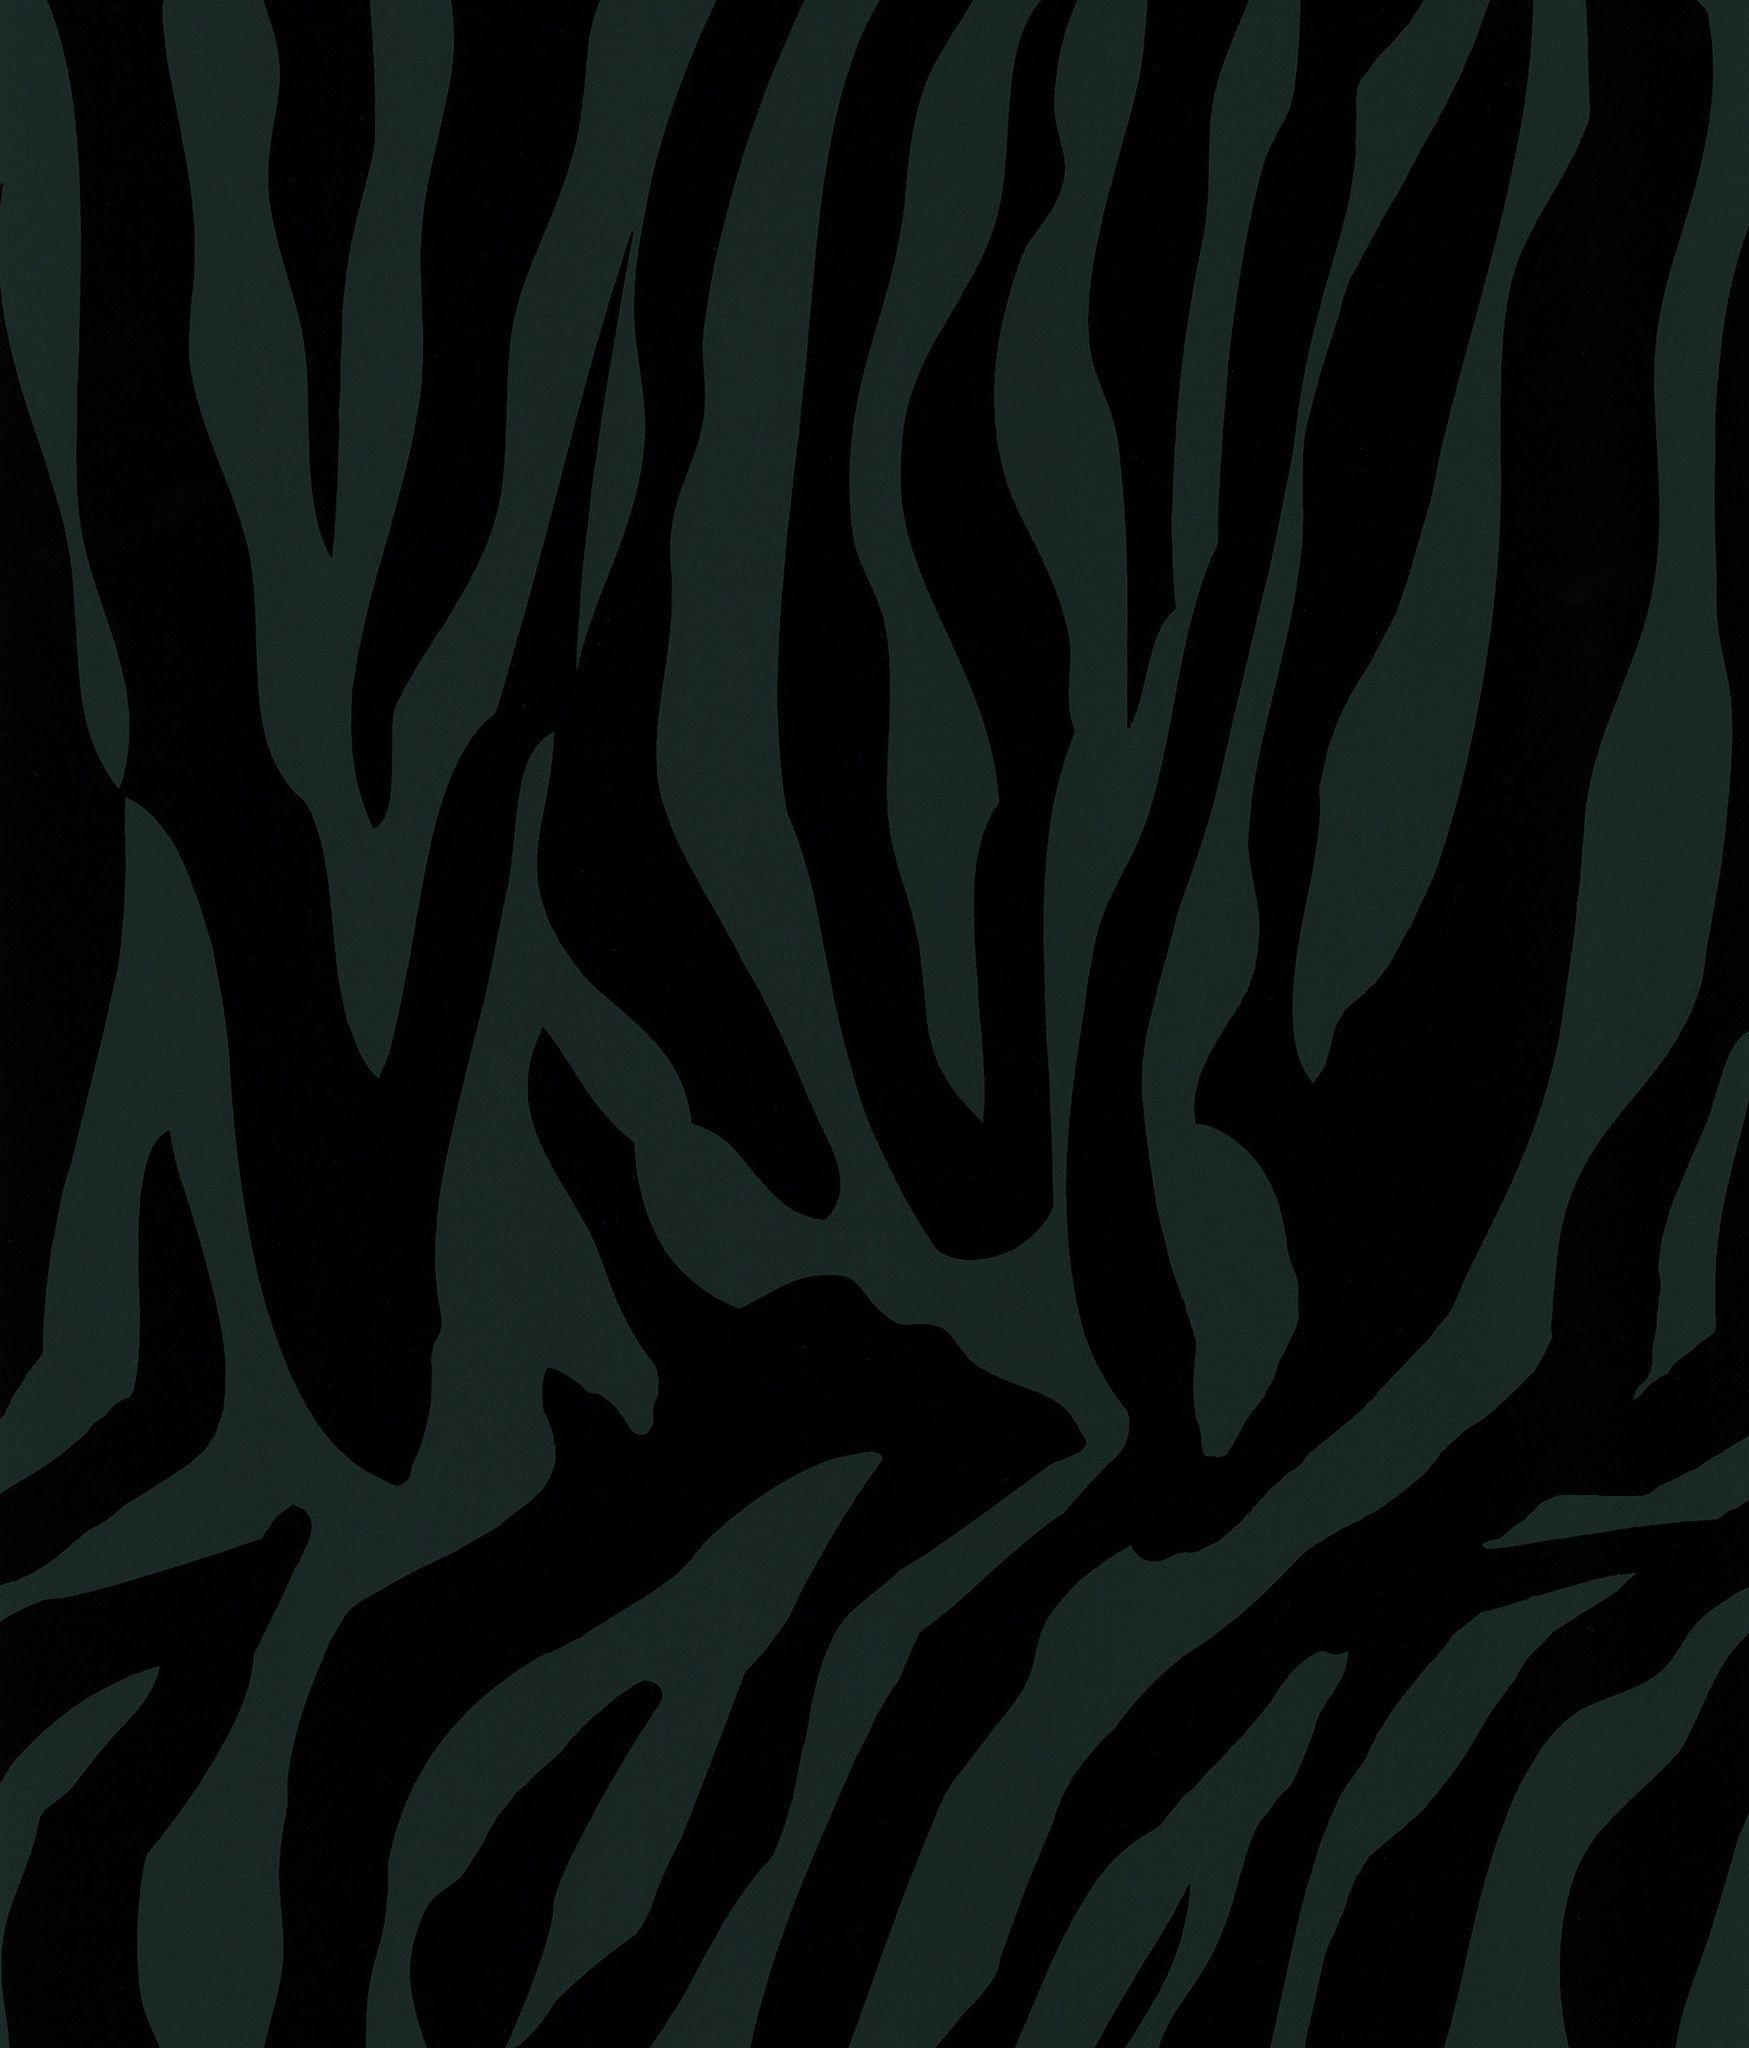 Sample Zebra Chic Stripe Wallpaper in Black